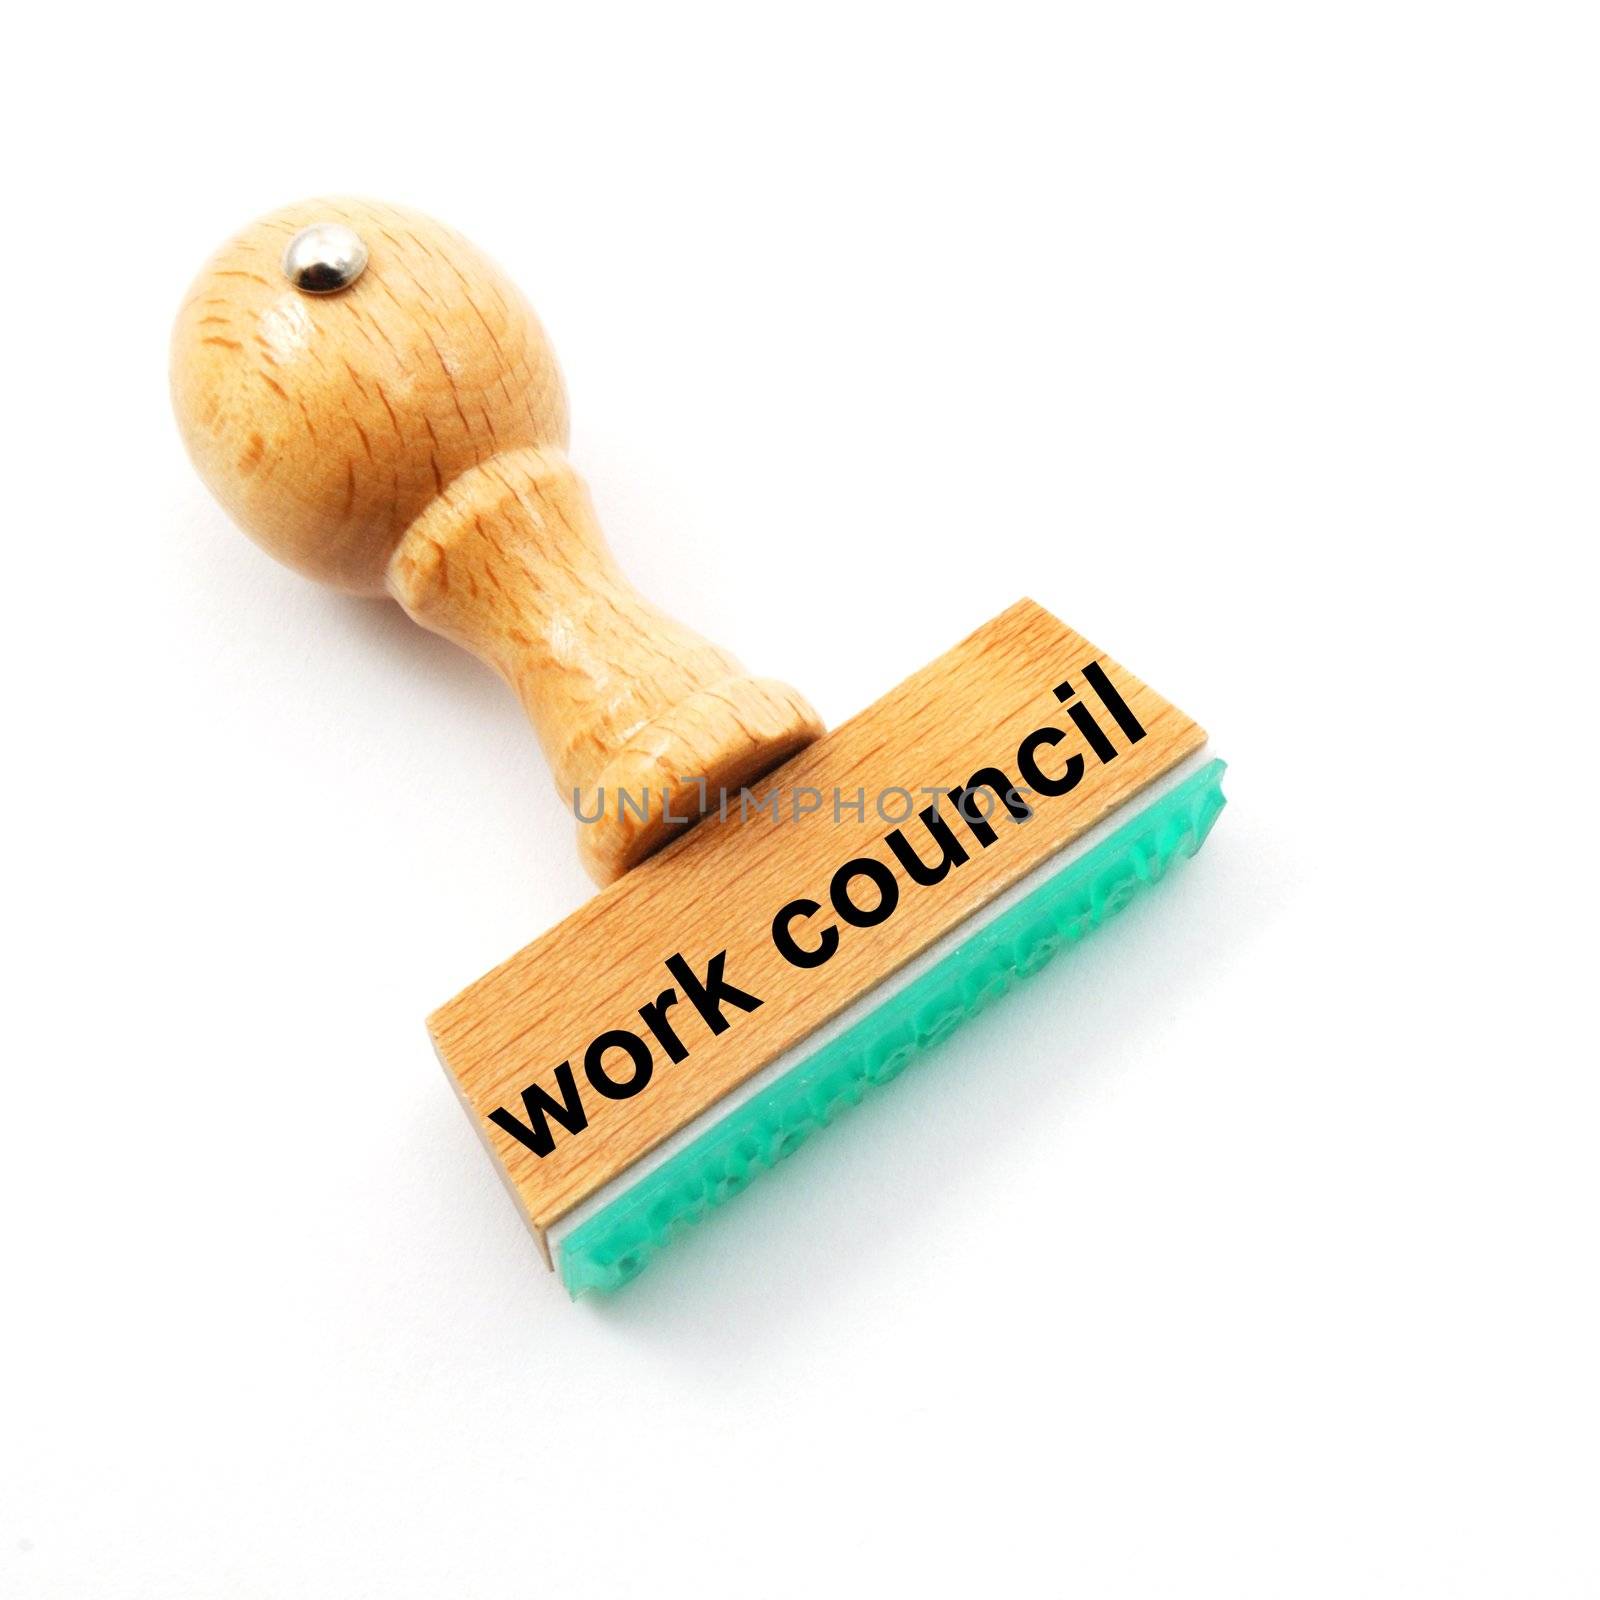 work council by gunnar3000